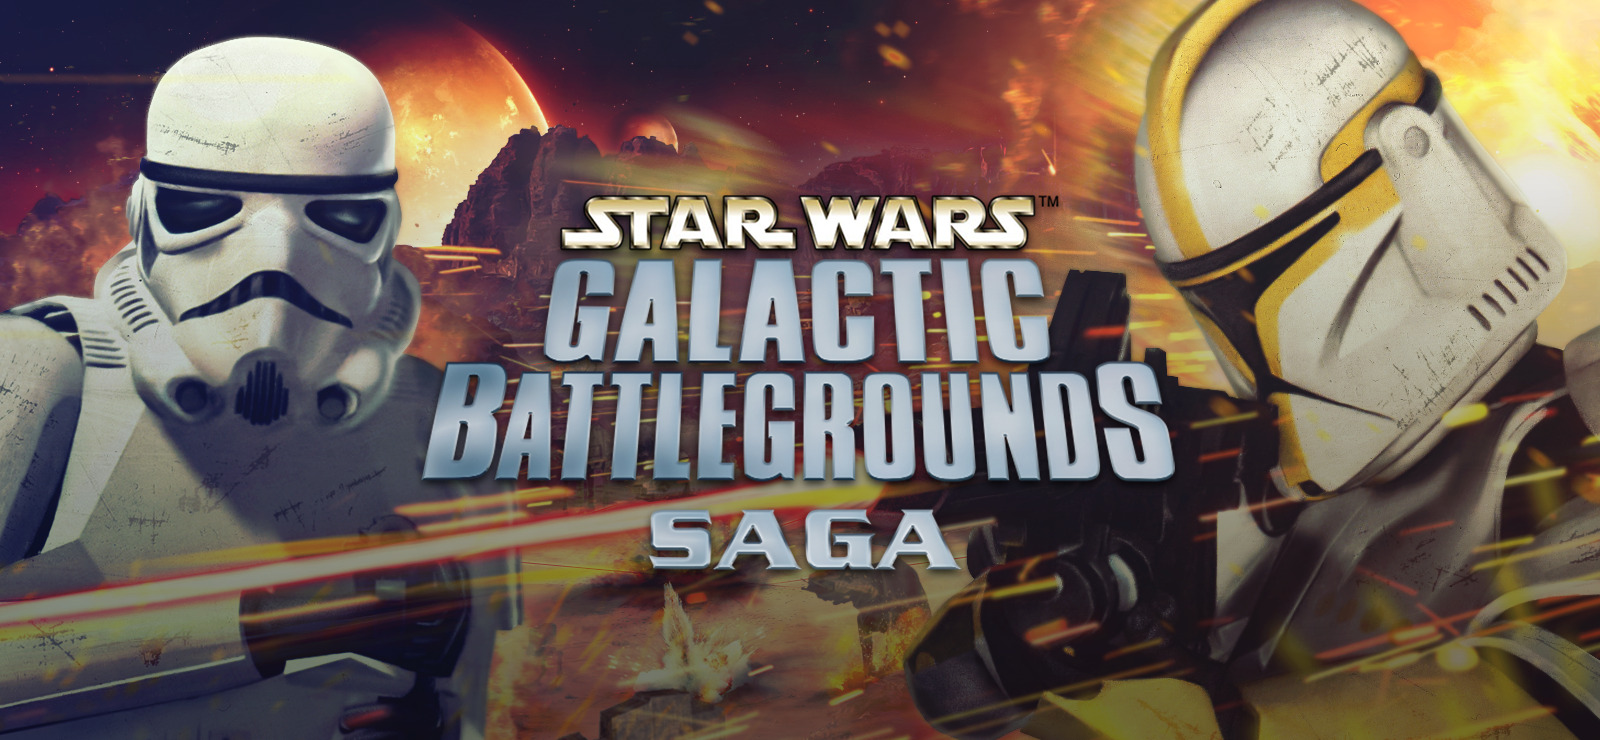 star wars galactic battlegrounds download mac torrent